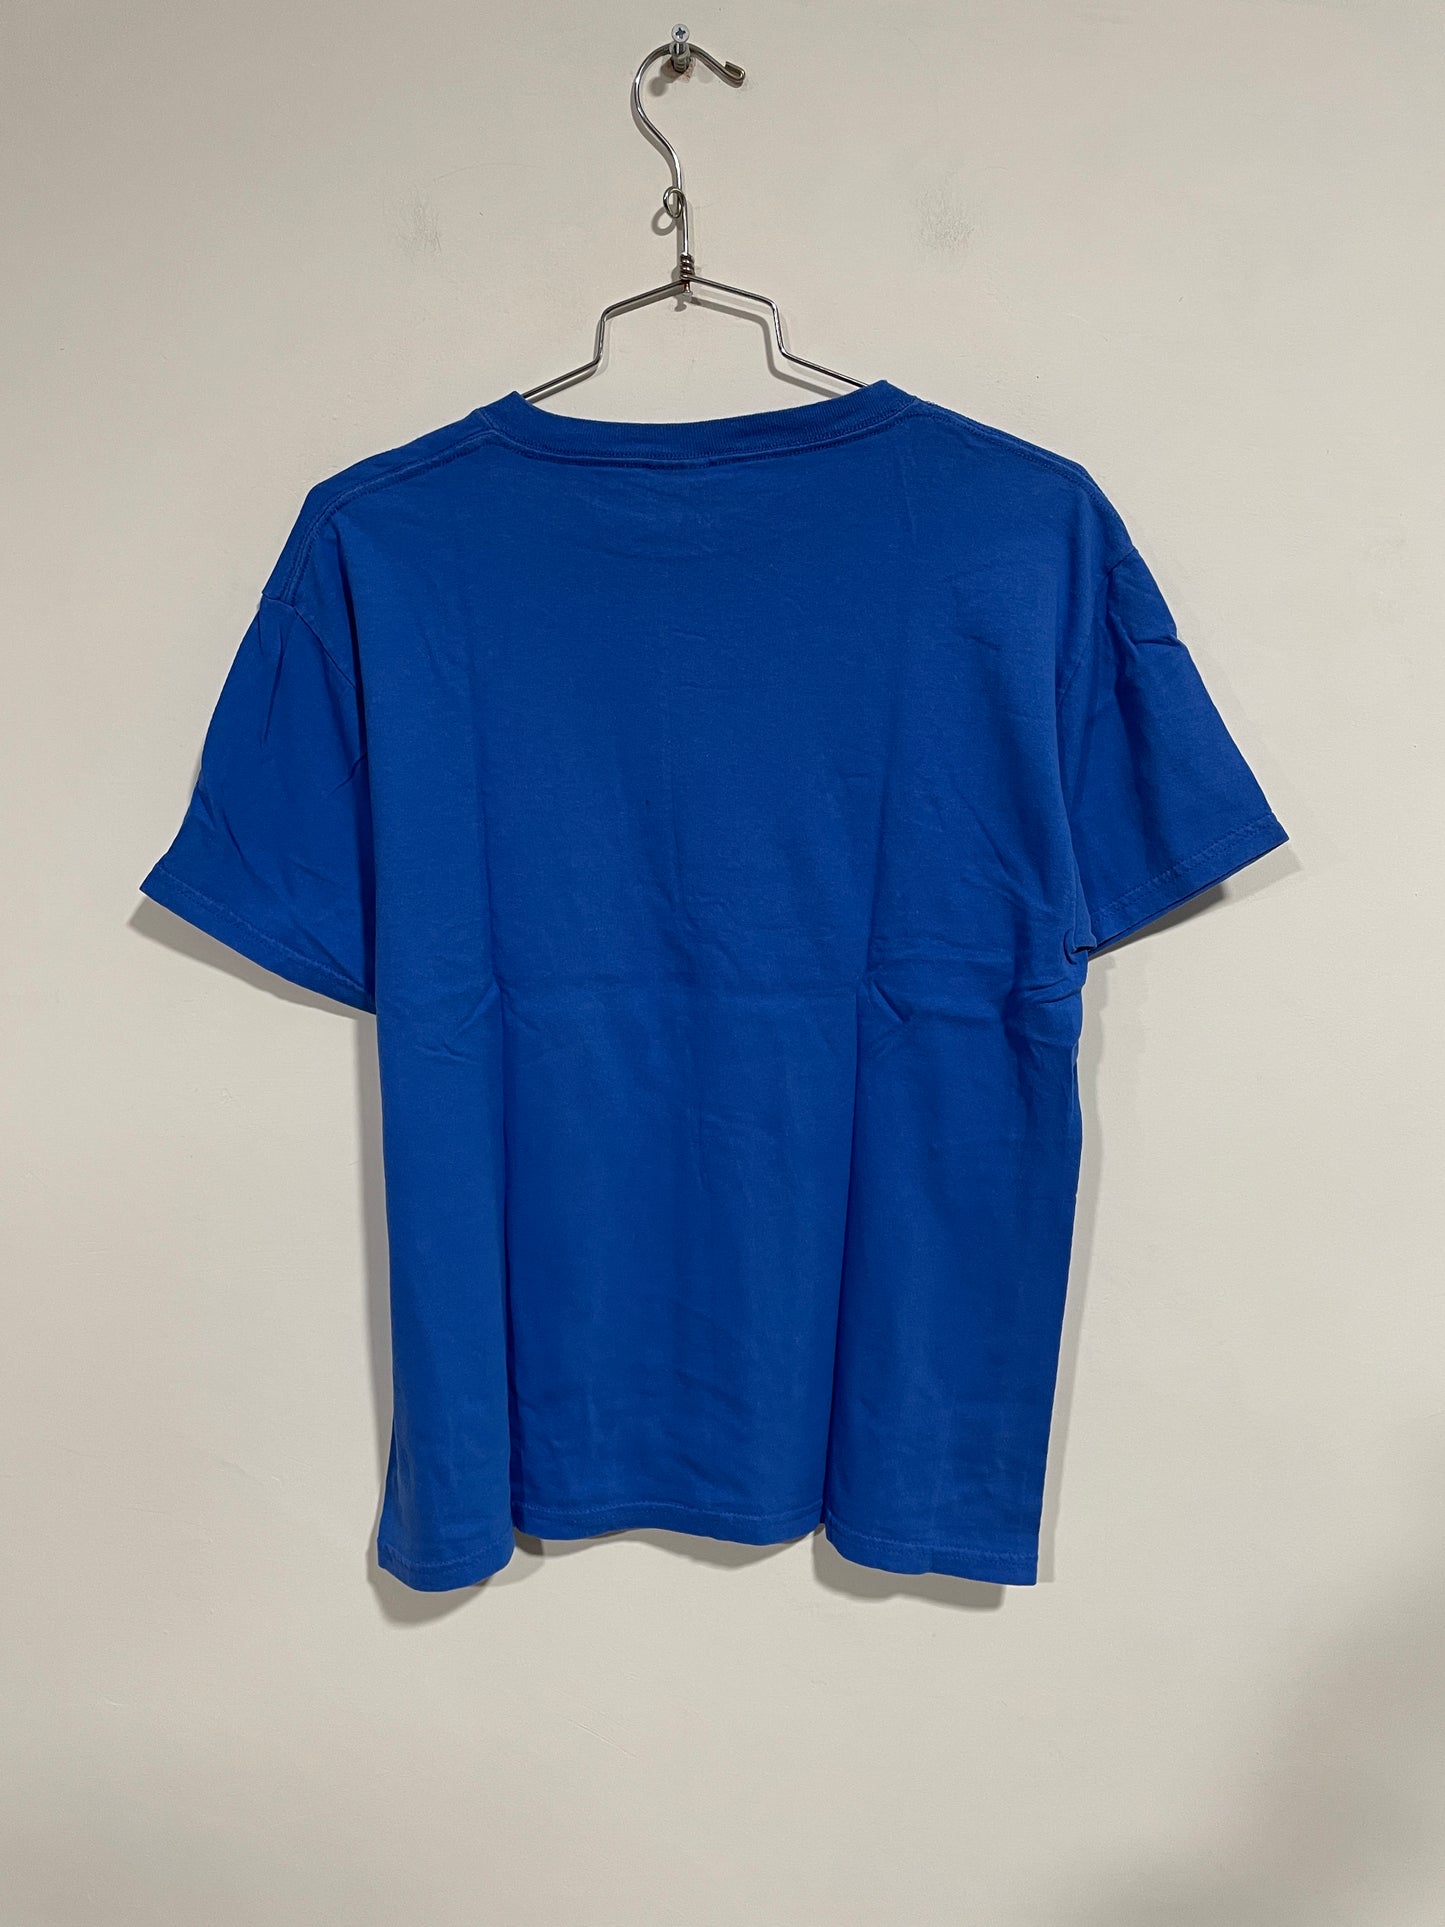 T shirt Indianapolis Colts (B362)